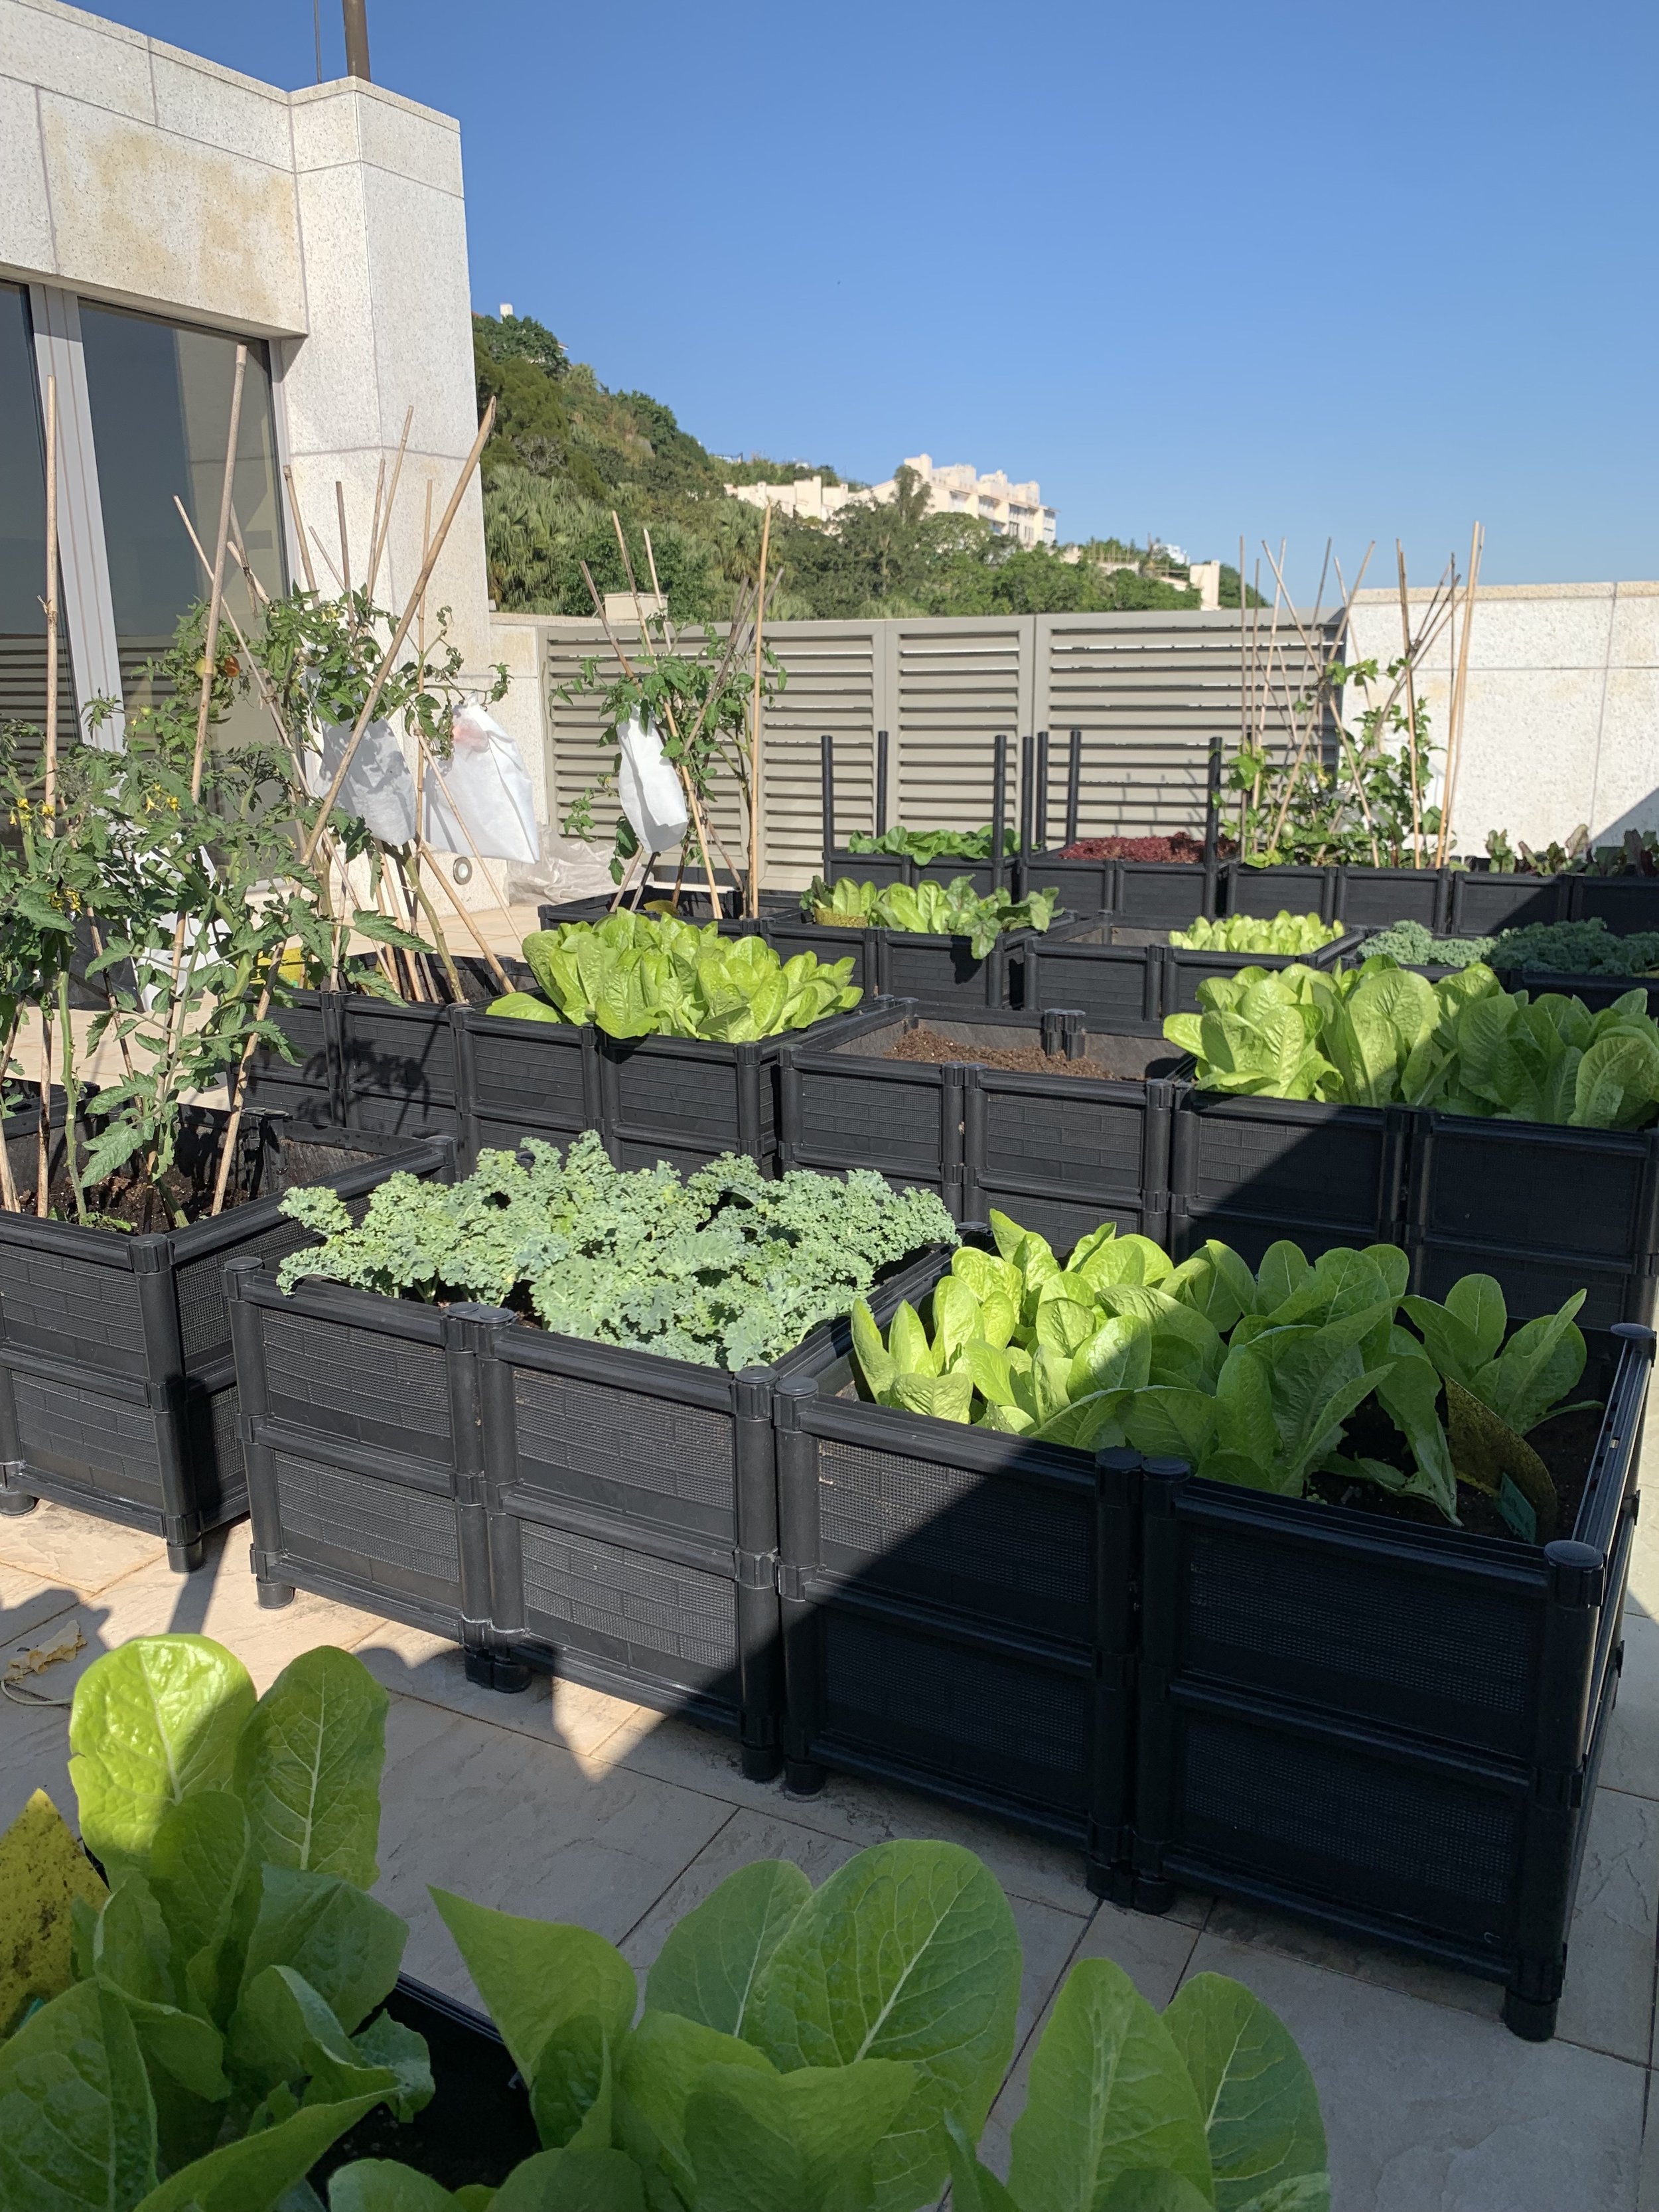 Grow Something Vegetable Garden Setup Home 5.jpg